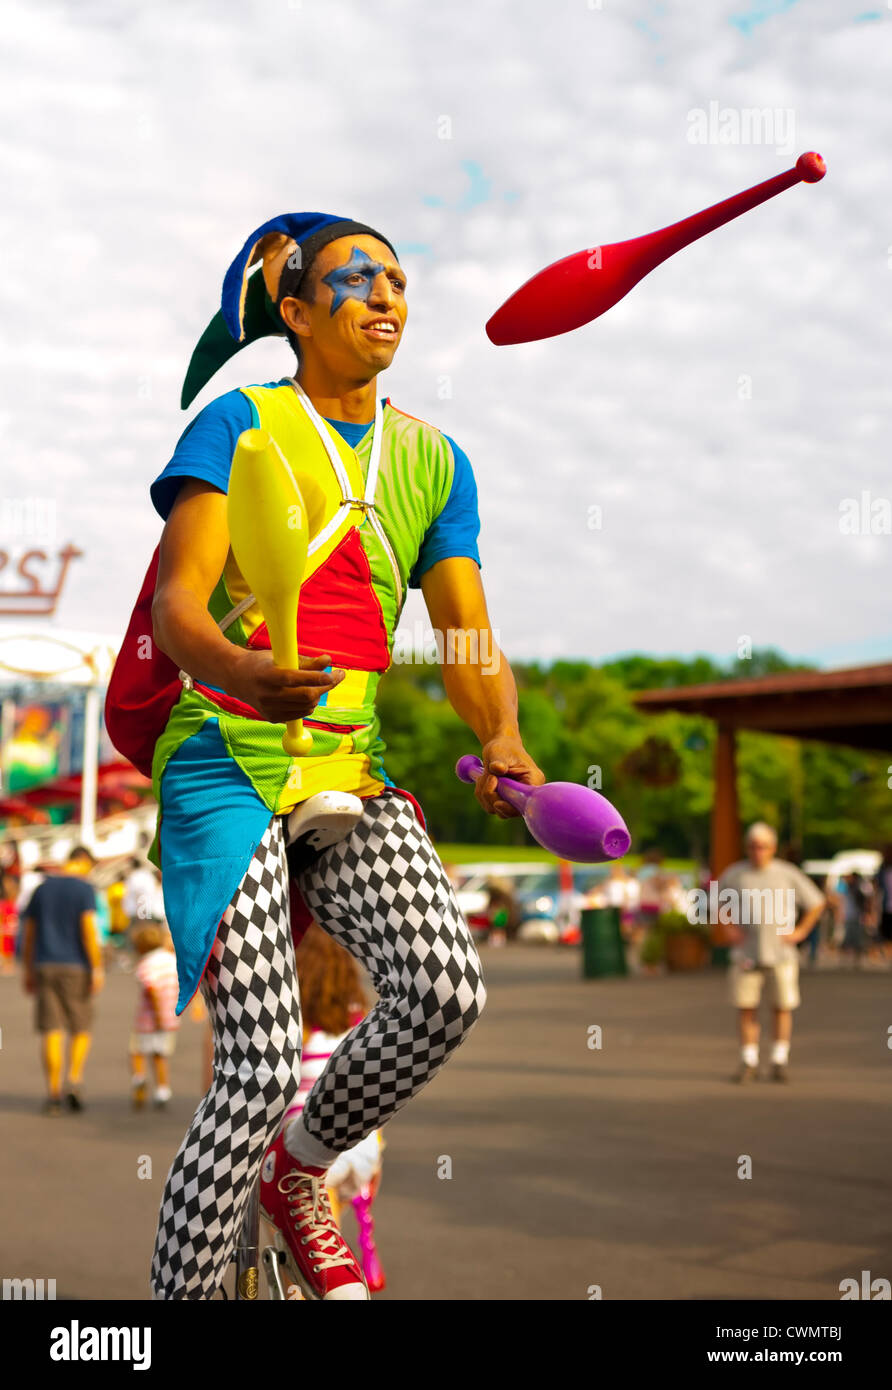 Agosto 25, 2012 - Middlebury, Connecticut, Stati Uniti - Giocoliere in costume di Arlecchino juggling pin sul monociclo a Quassy Amusement Park. Foto Stock